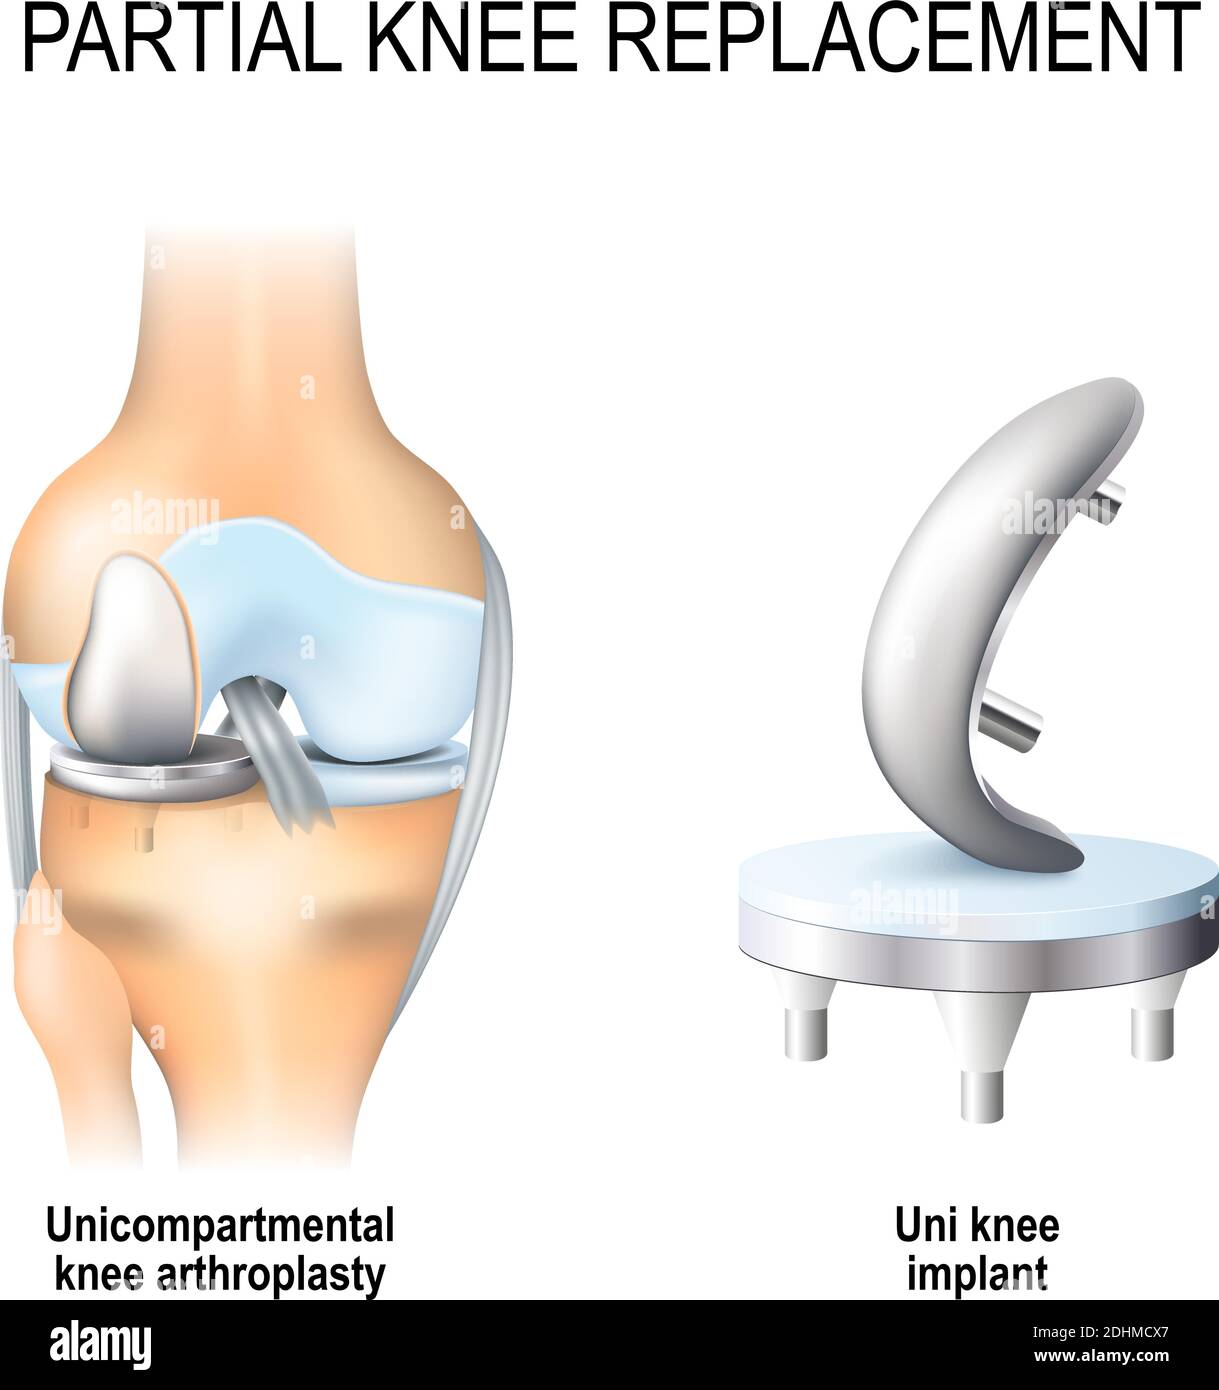 Partieller Knieersatz. Einfachknieartroplastik und Einknieimplantat Stock Vektor